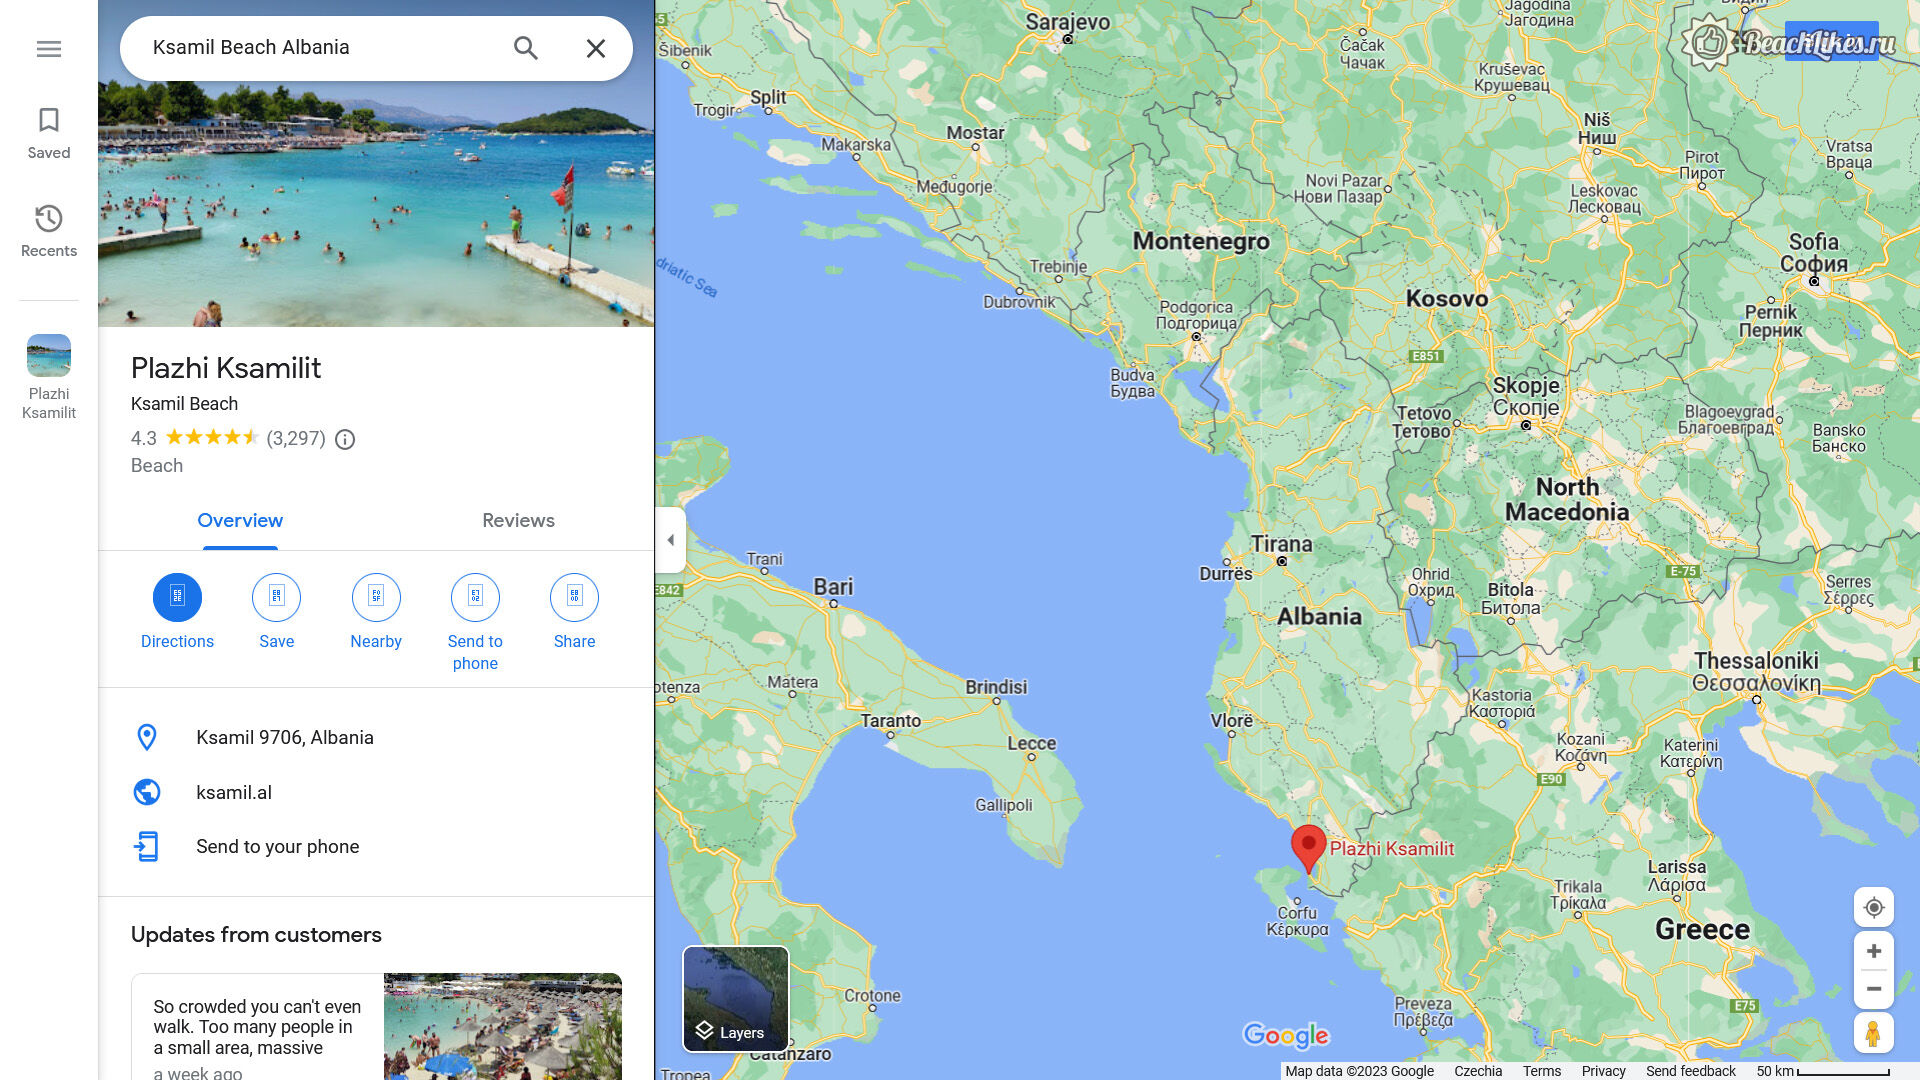 Ксамил пляж в Албании где находится на карте и расстояние